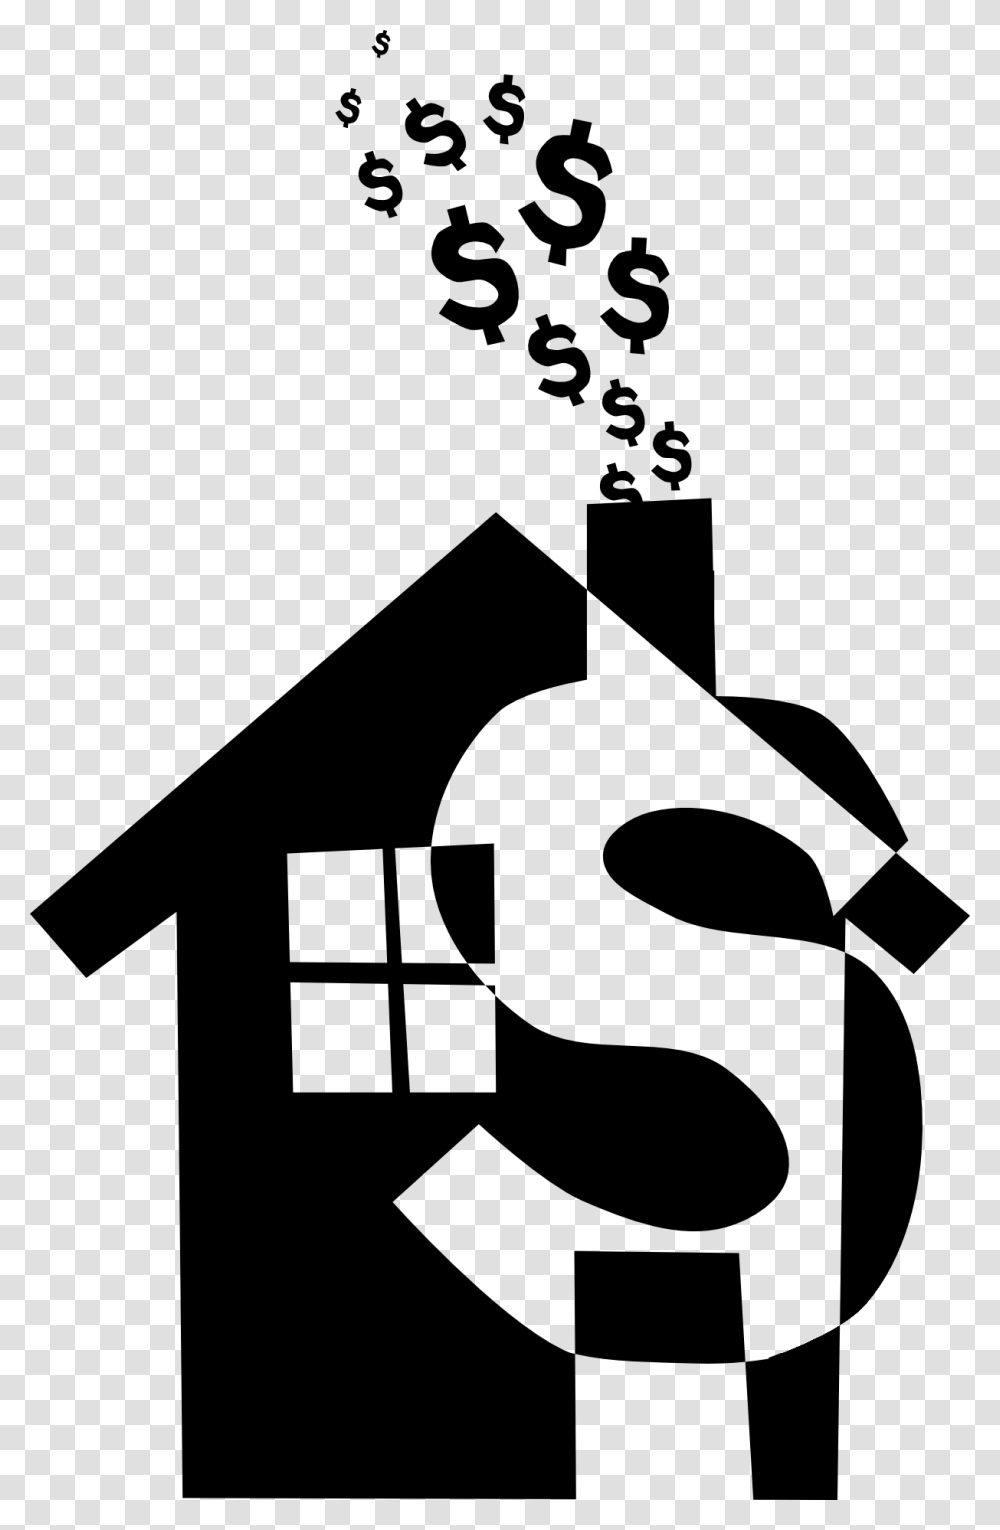 Money House Clipart, Cross, Stencil Transparent Png